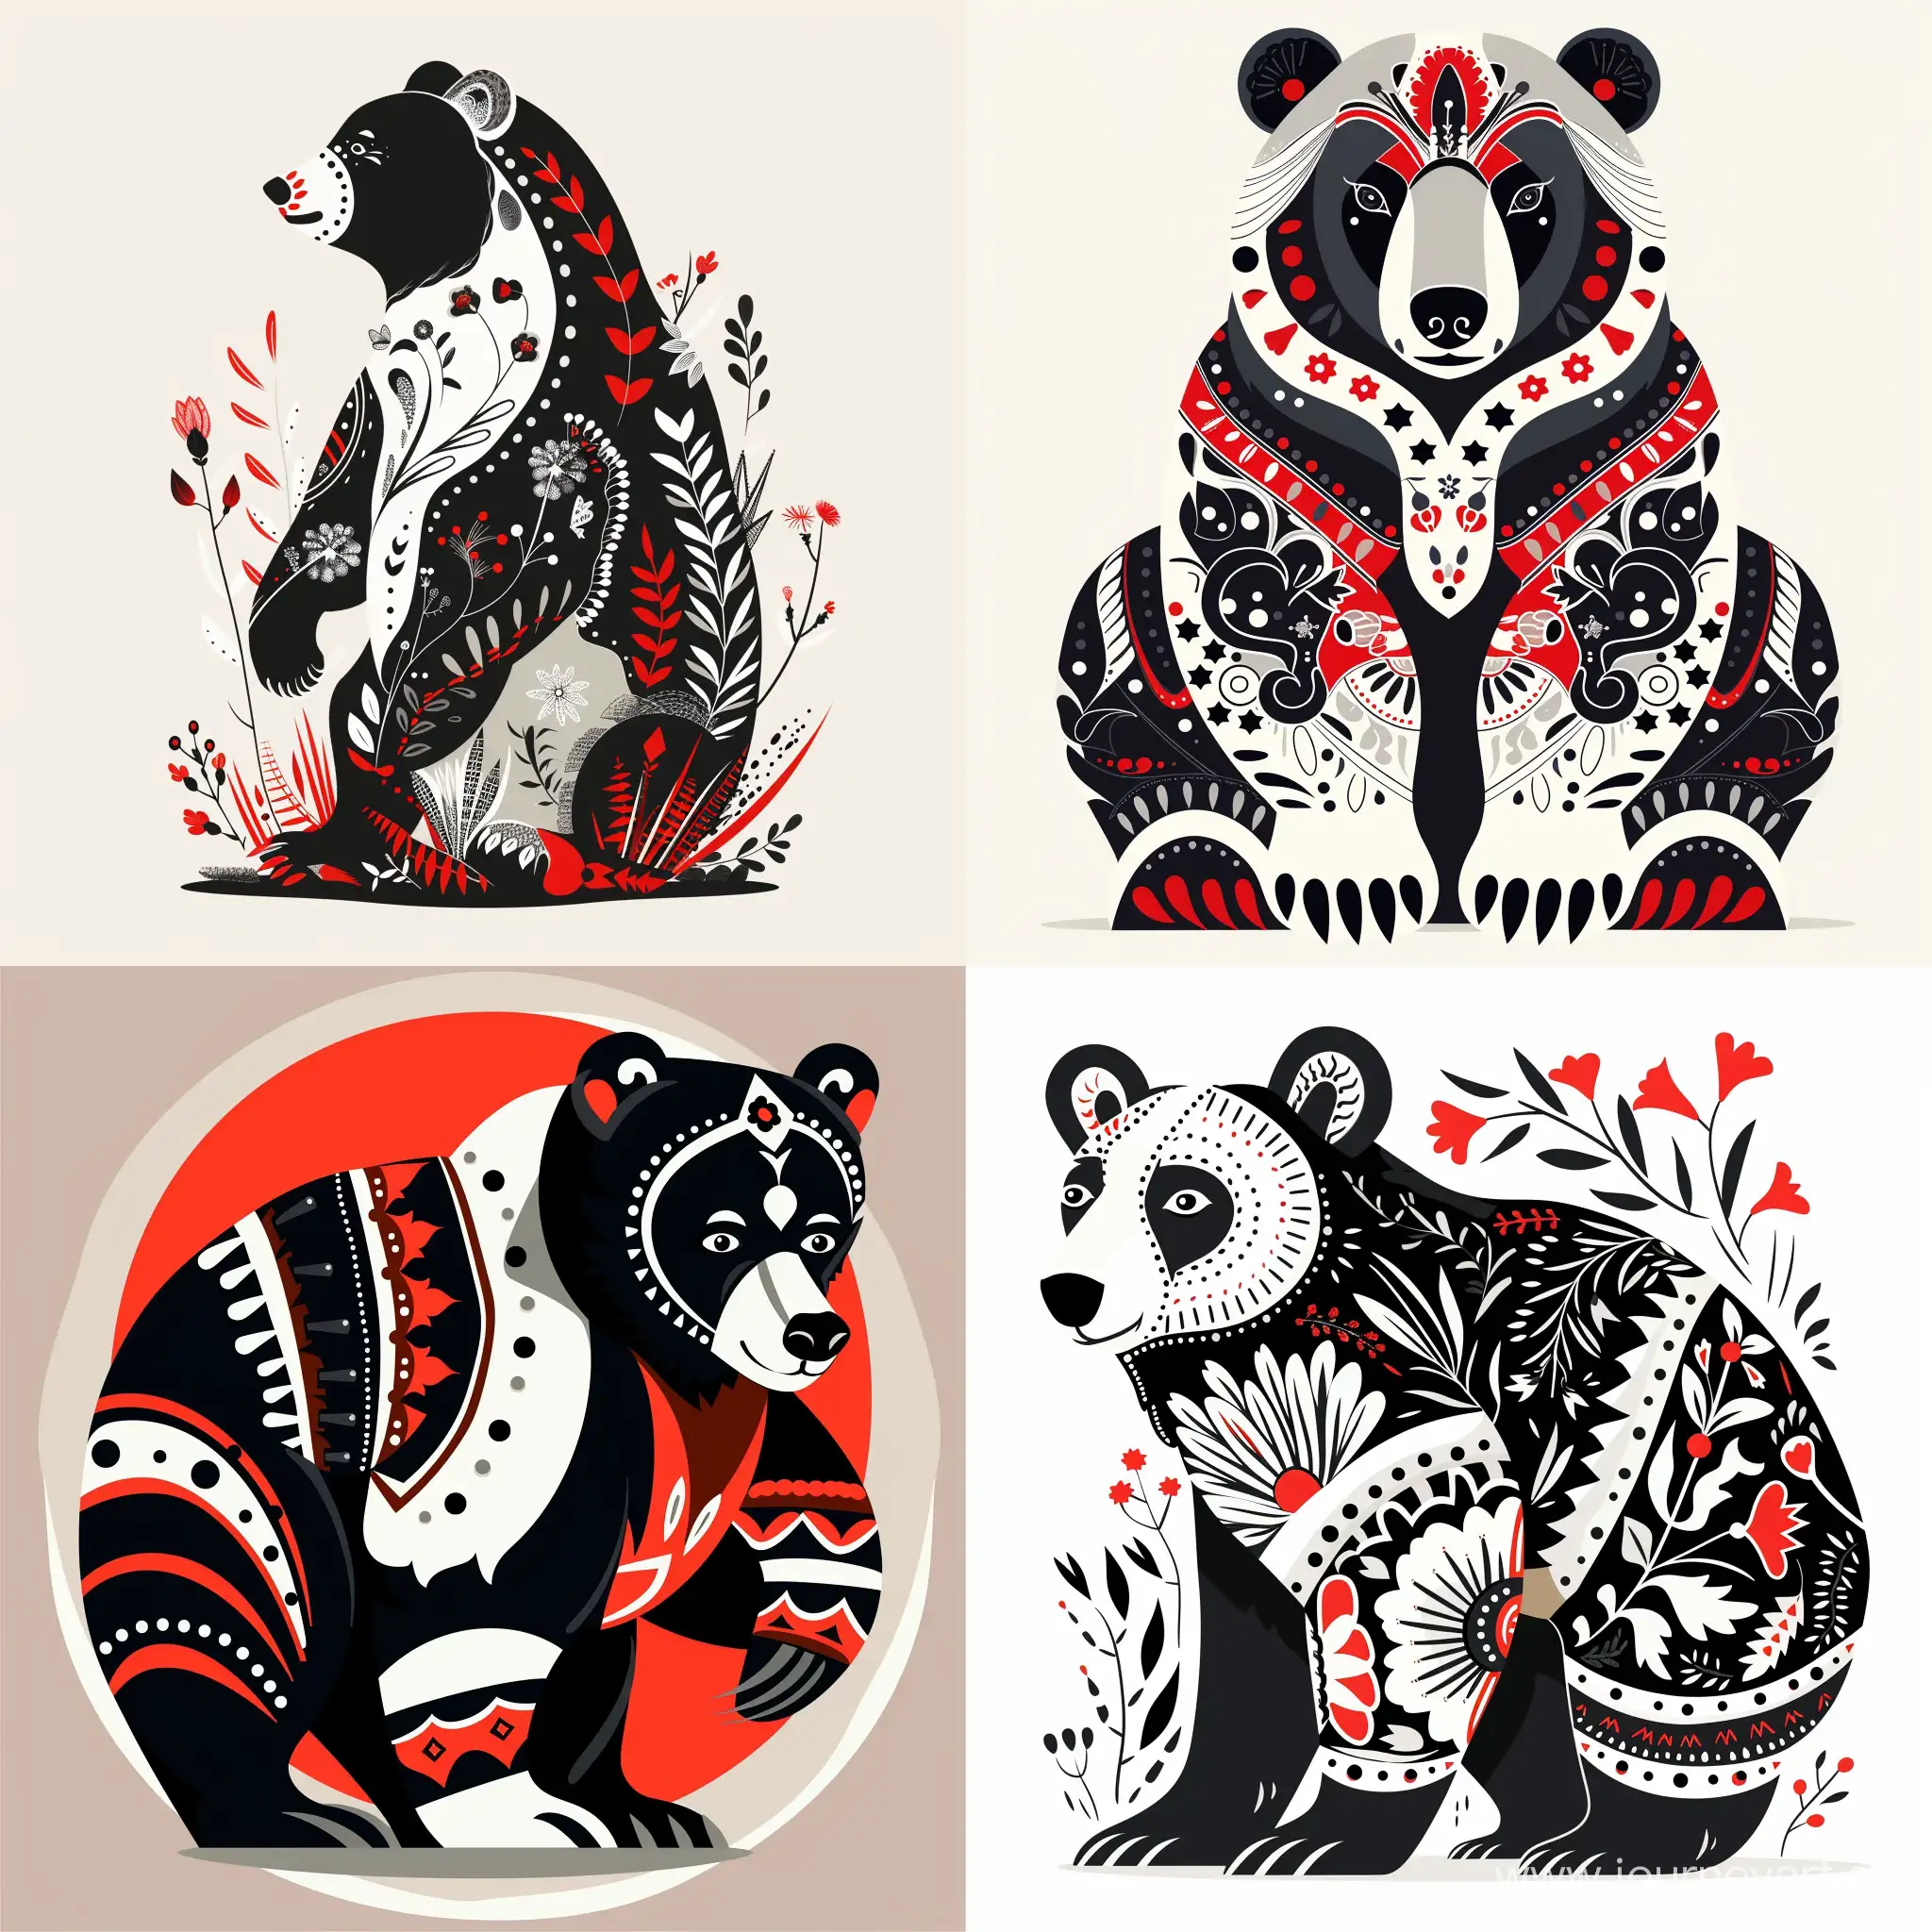 Минималистичноя векторная Иллюстрация  Медведя будущего в русско народном стиле для футболки, с цветами черный, белый, красный в плоском стиле без объема